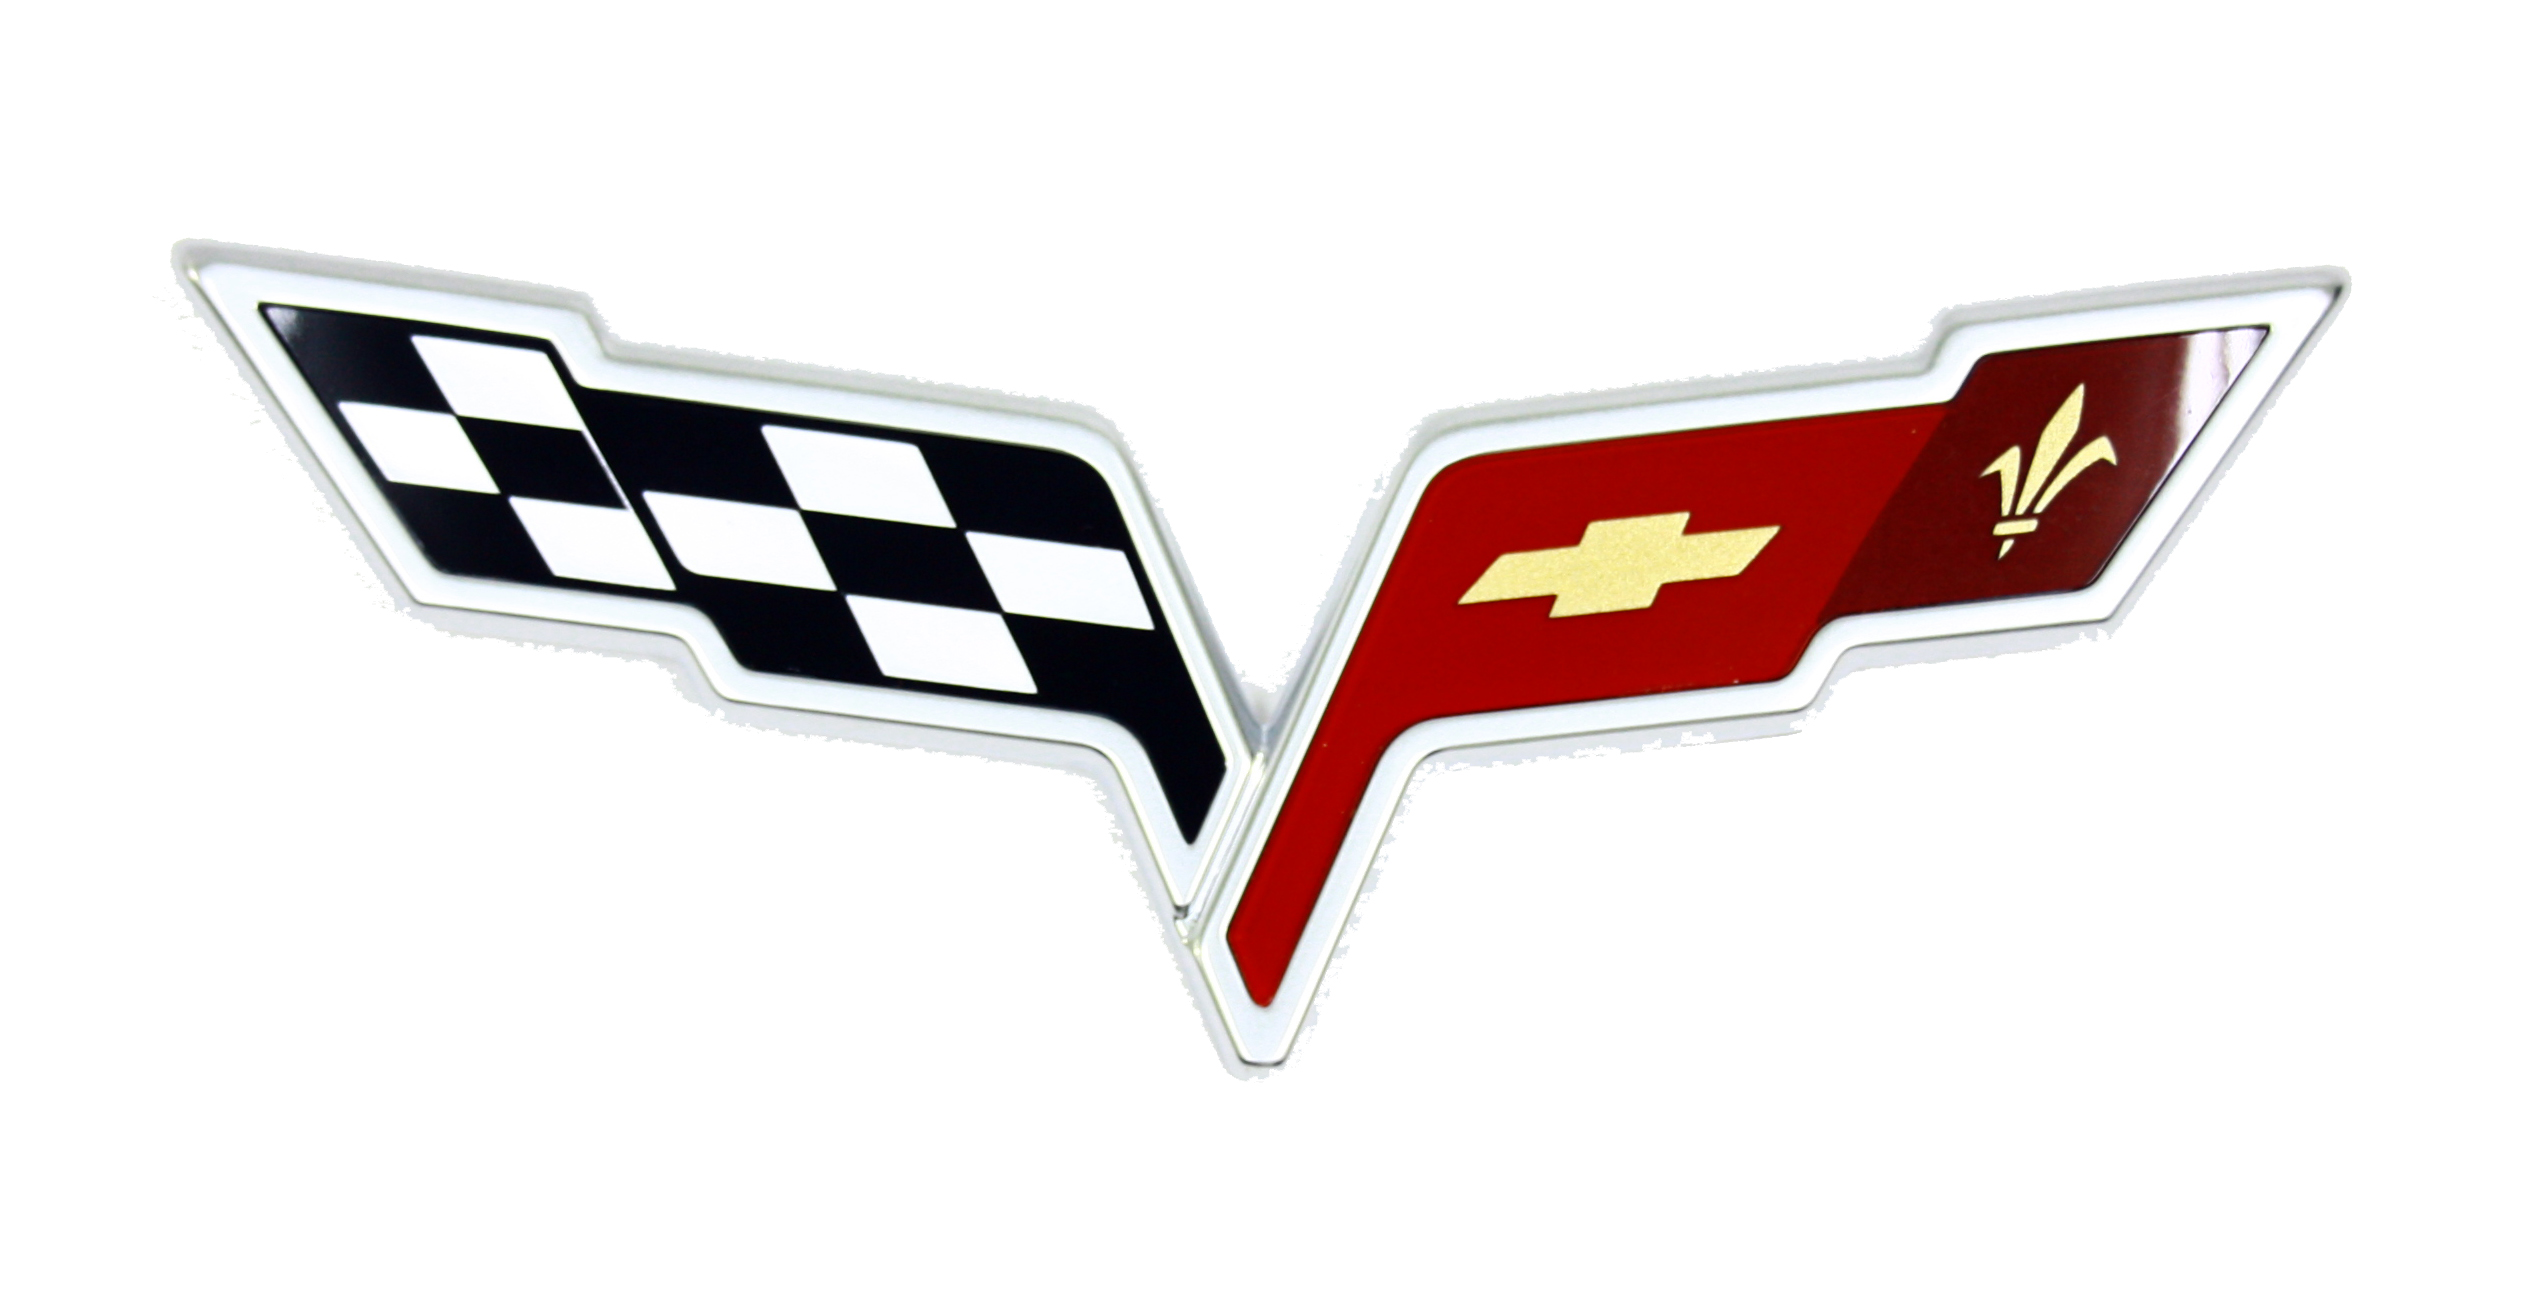 2005-2008 Corvette C6 Rear Emblem (Silver) NOS